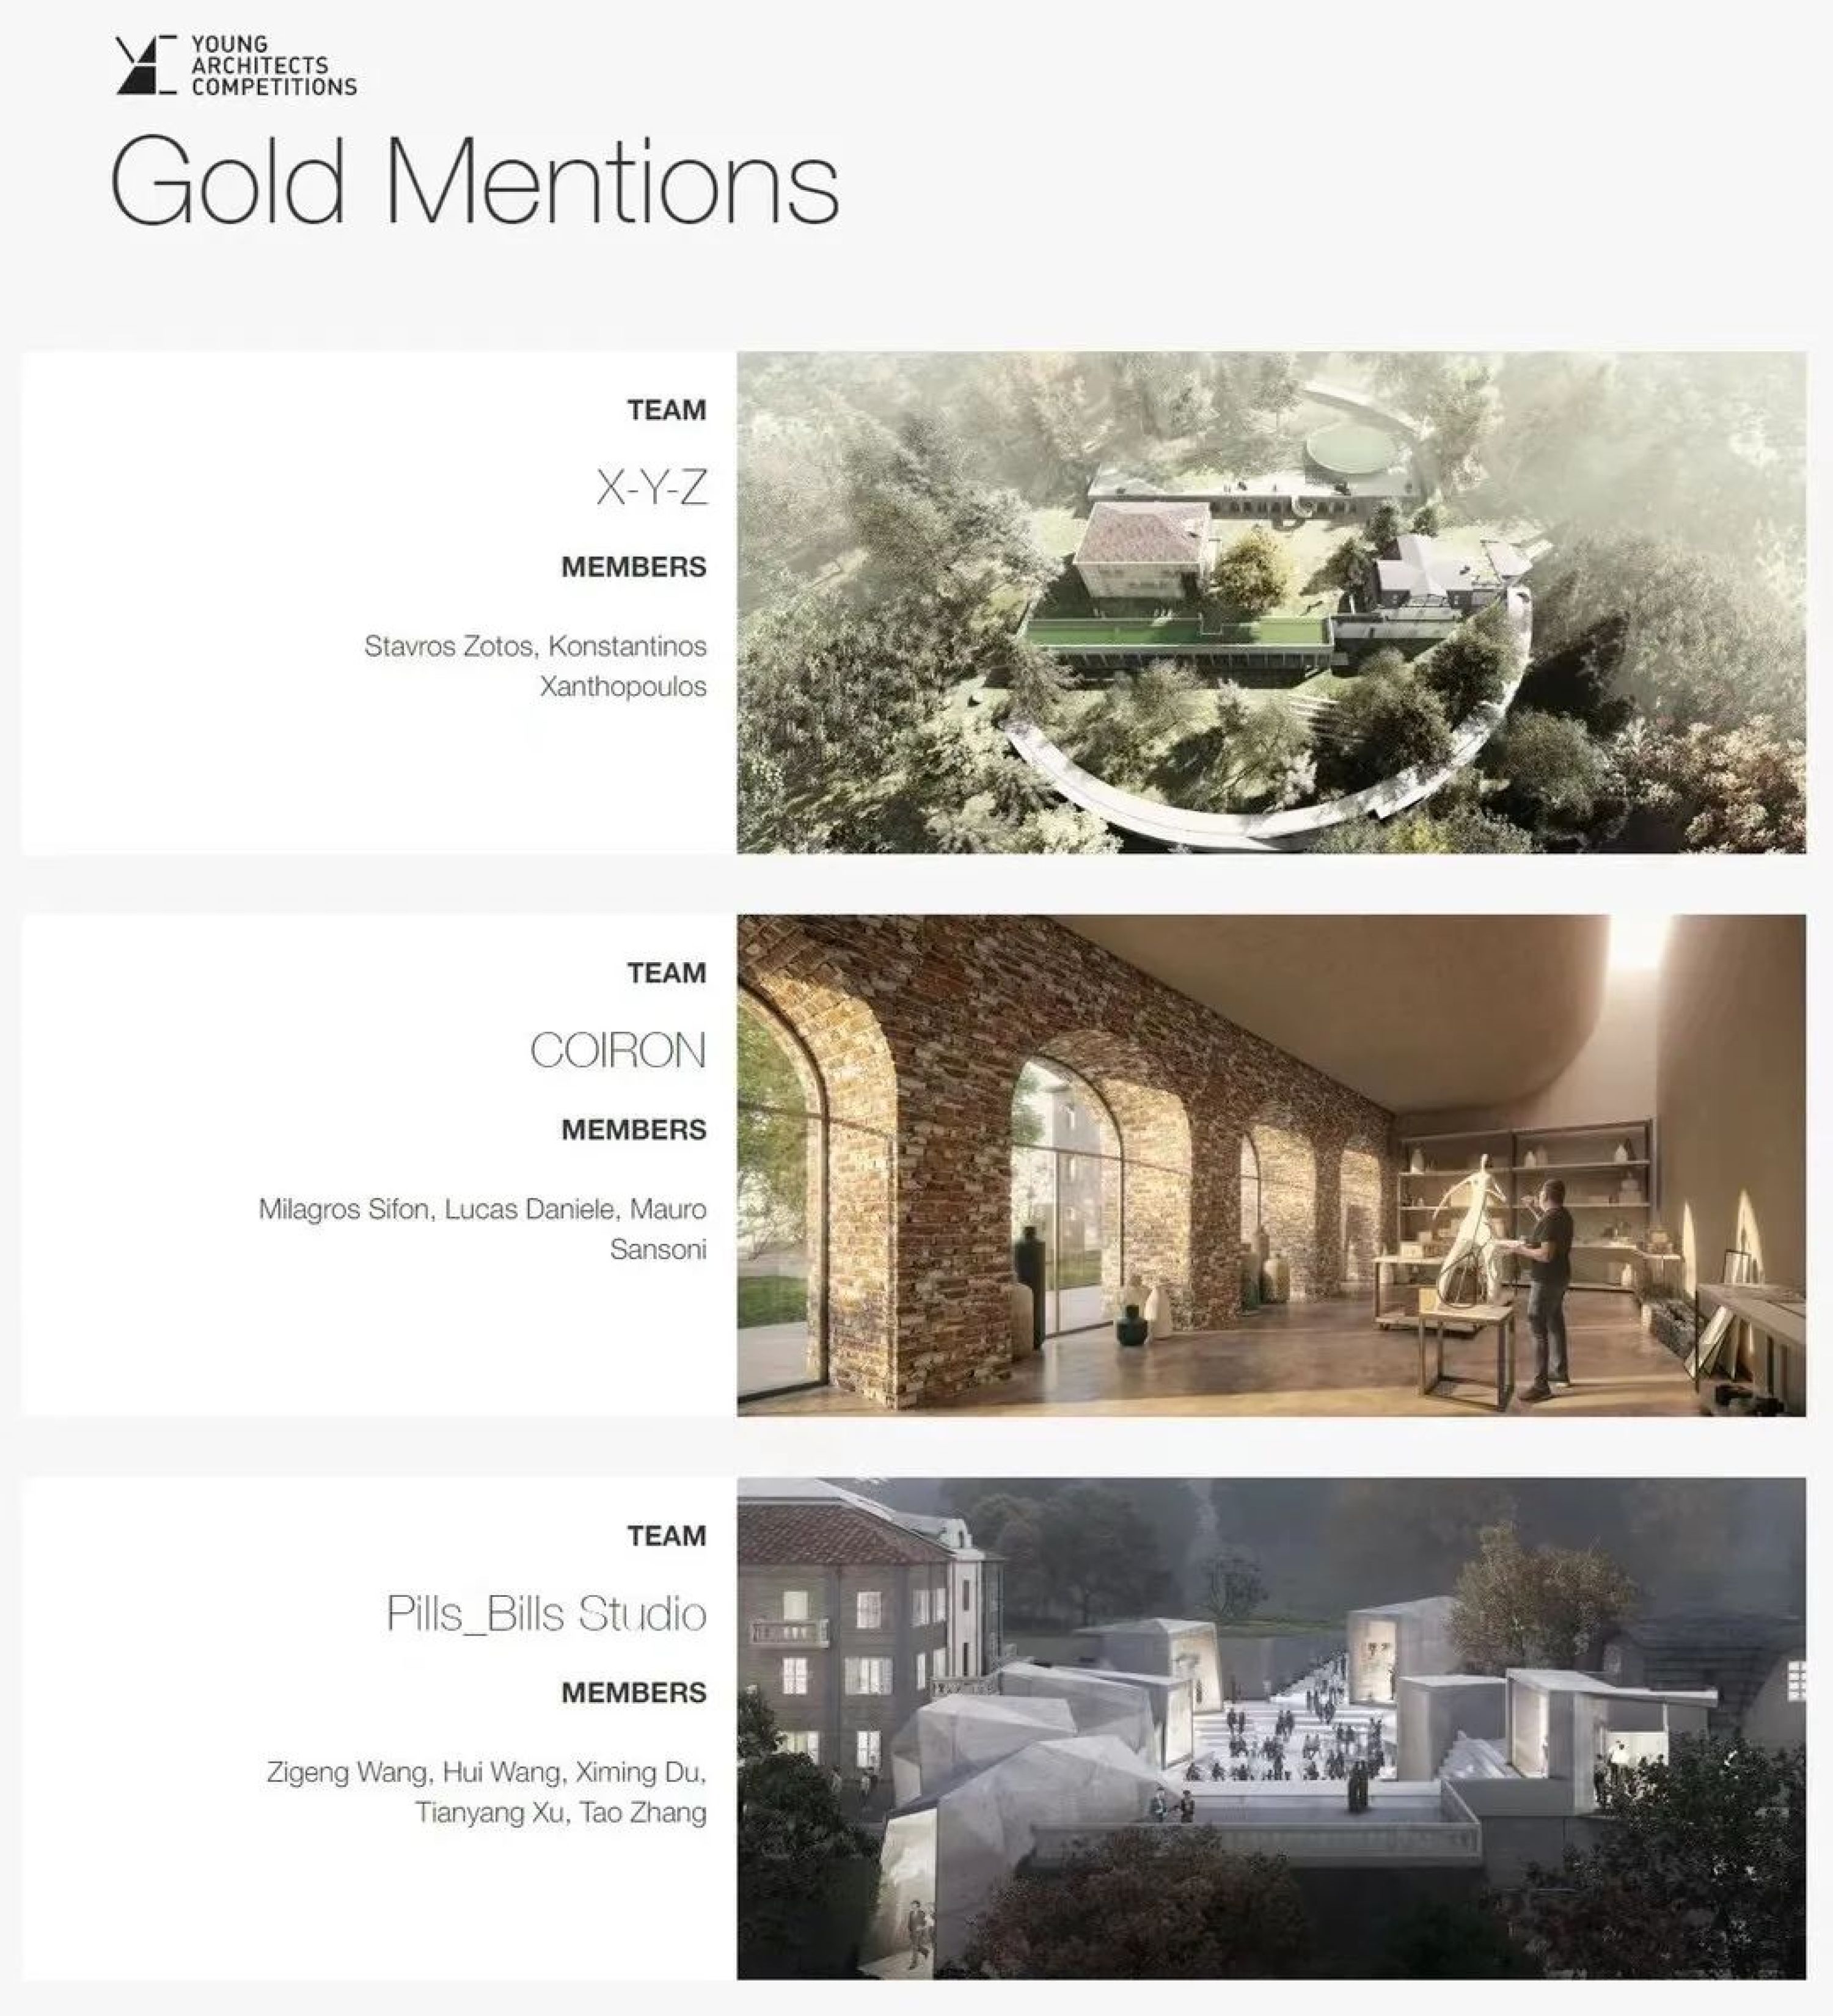 PILLSはYAC国際建築設計コンペティション “Hills of the Arts” Gold Mentionsを獲得